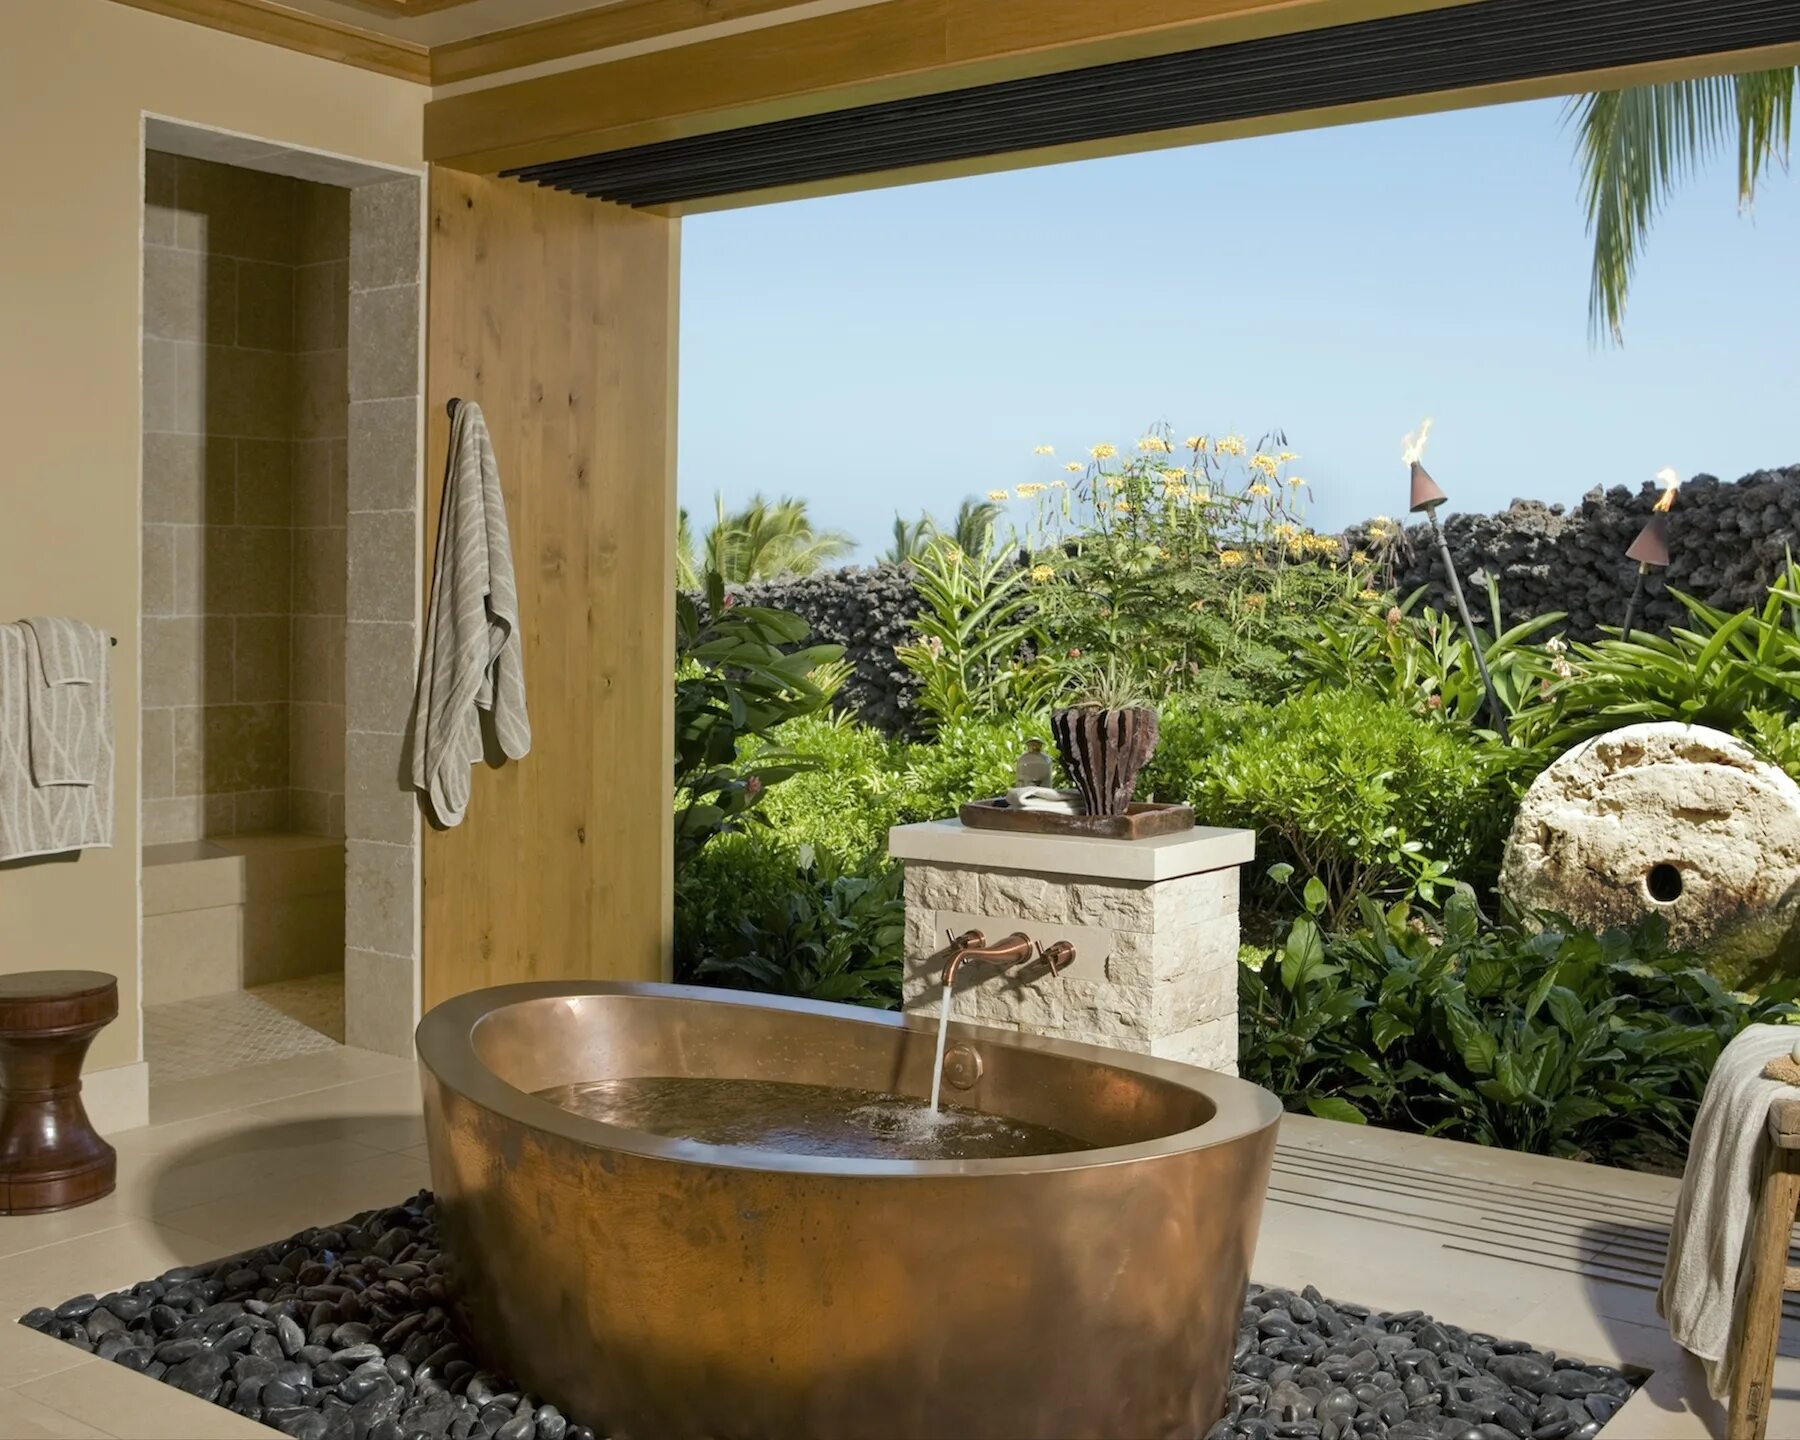 Ванная комната в тропическом стиле. Ванная комната в стиле джунгли. Душевые в балийском стиле. Ванная в тропиках.